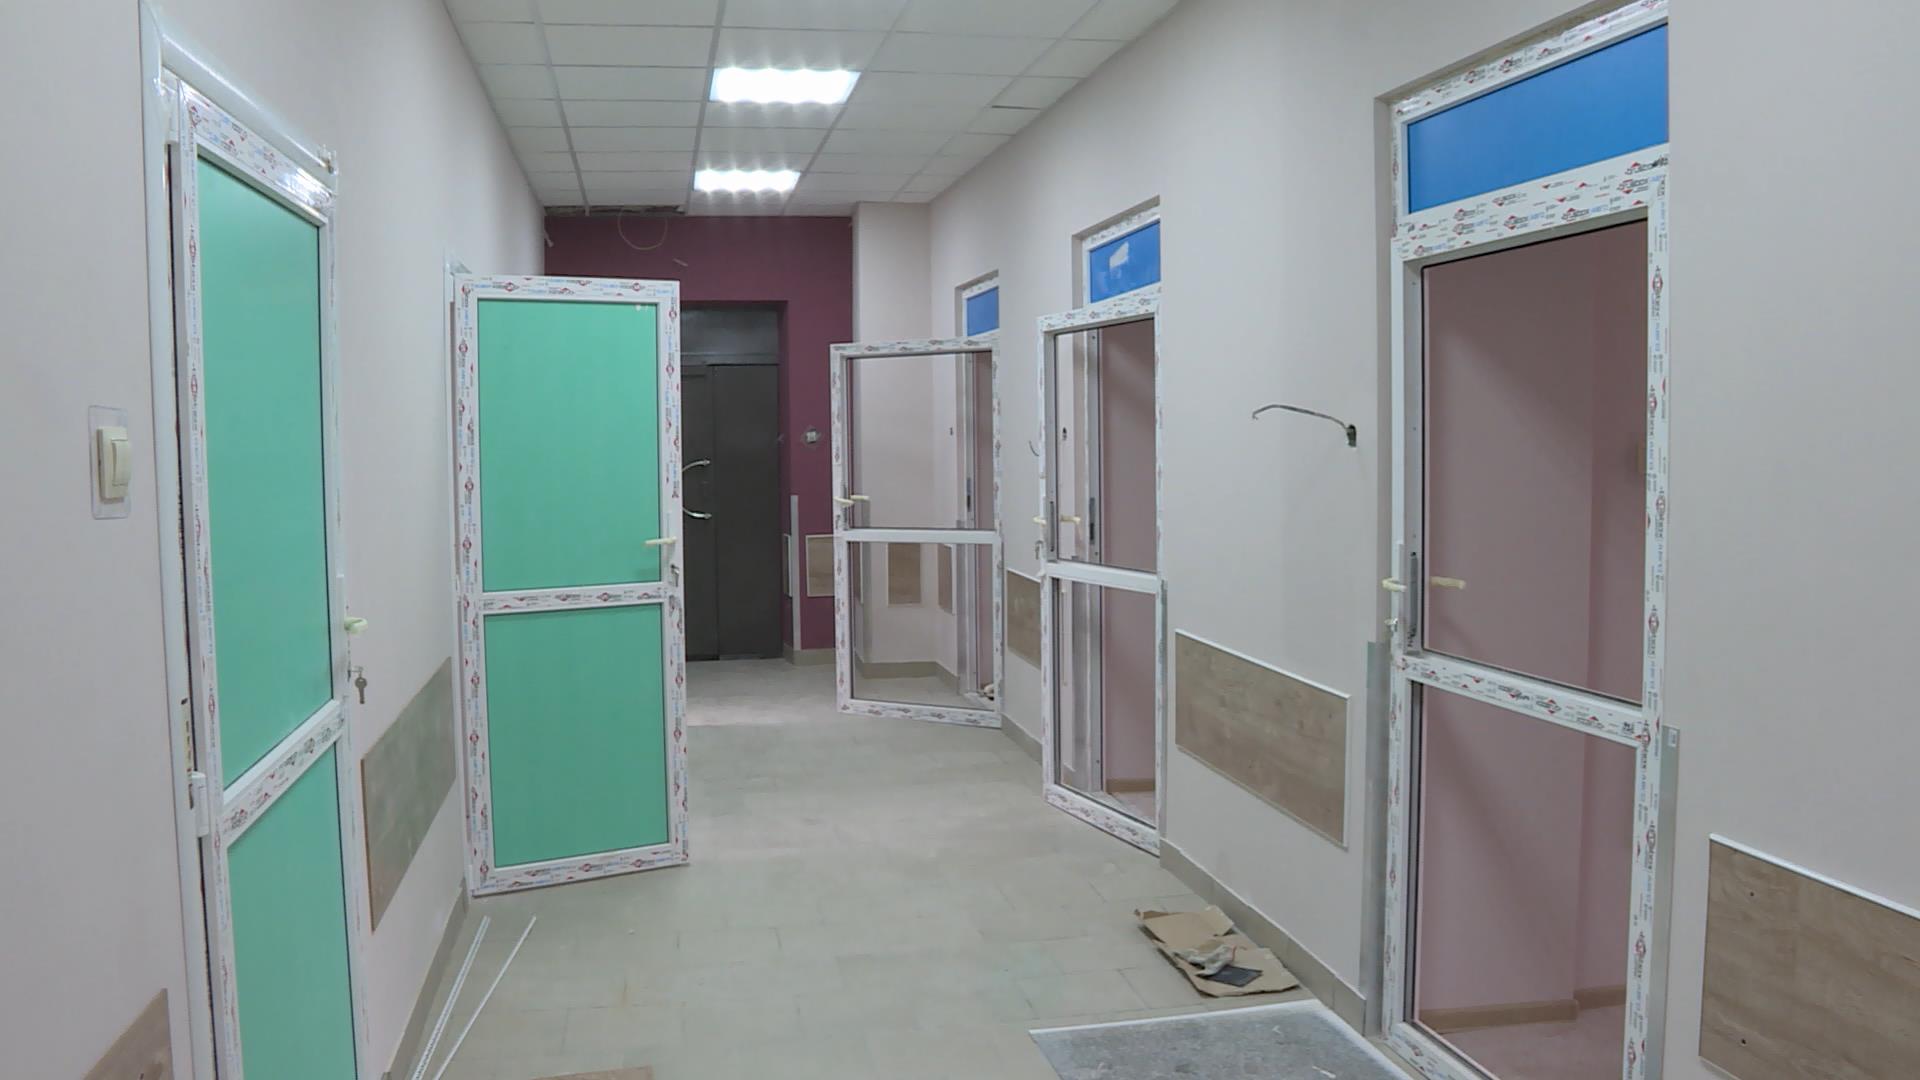 Сосудистое отделение областной больницы в Костроме обновят к марту